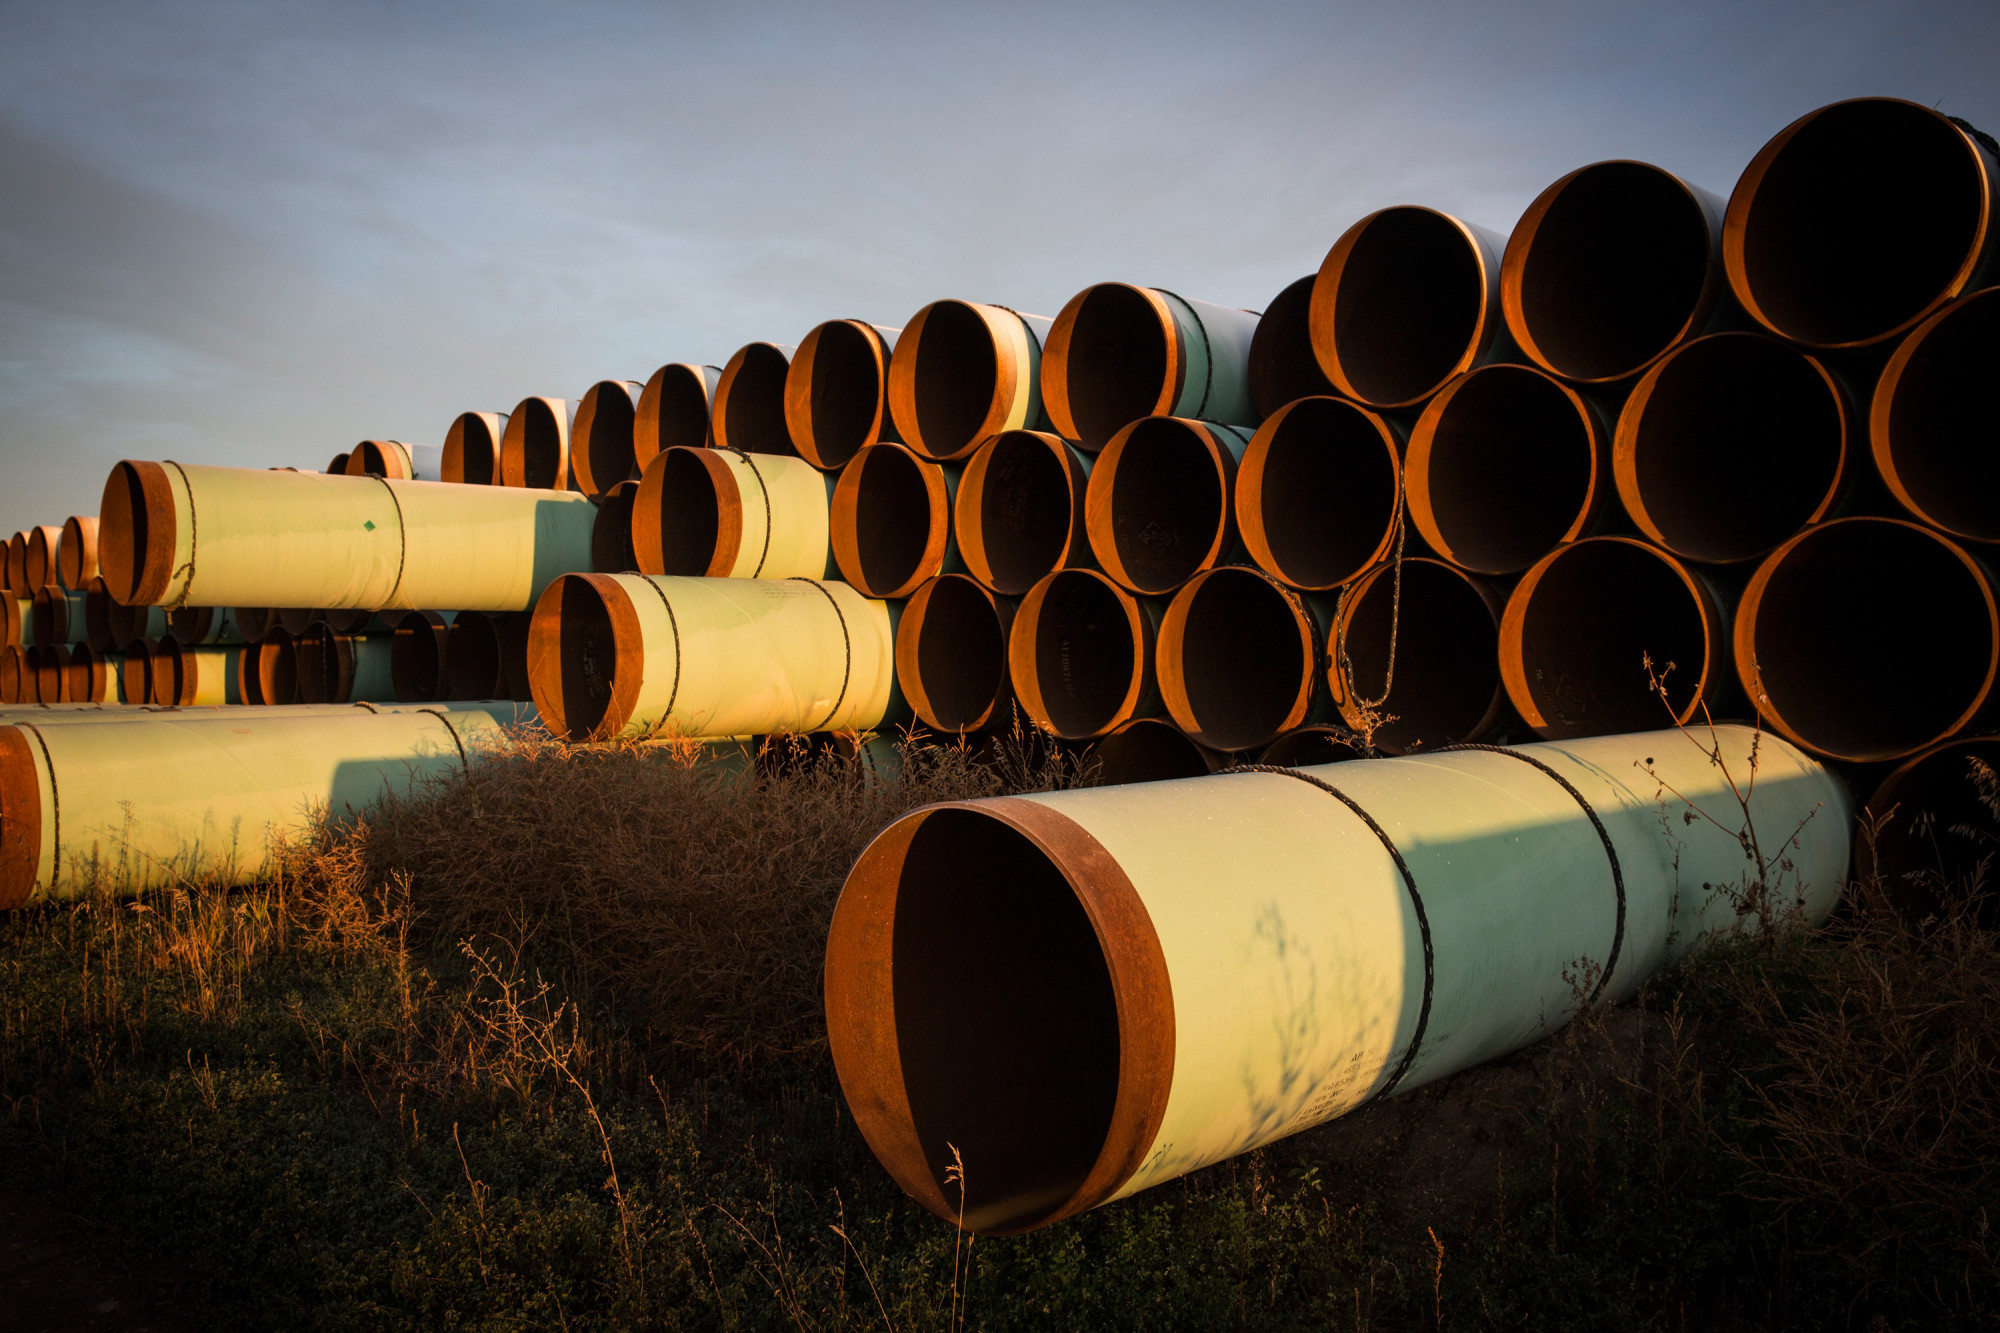 Keystone Oil Pipeline Leaks 383,000 Gallons in North Dakota